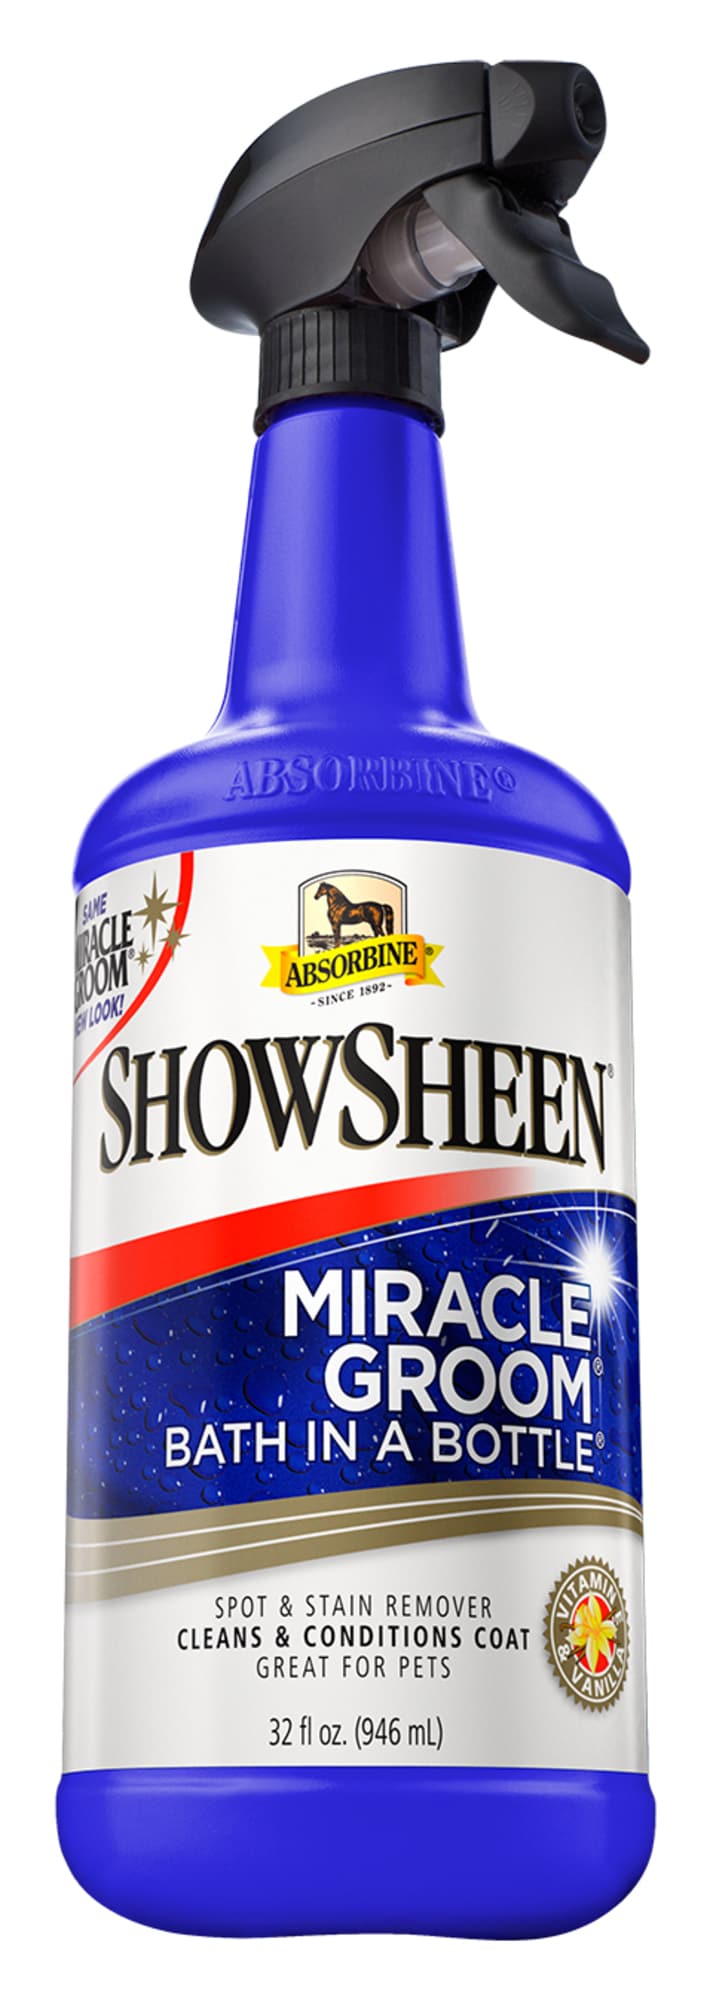 Absorbine Miracle Groom med spray, 946ml